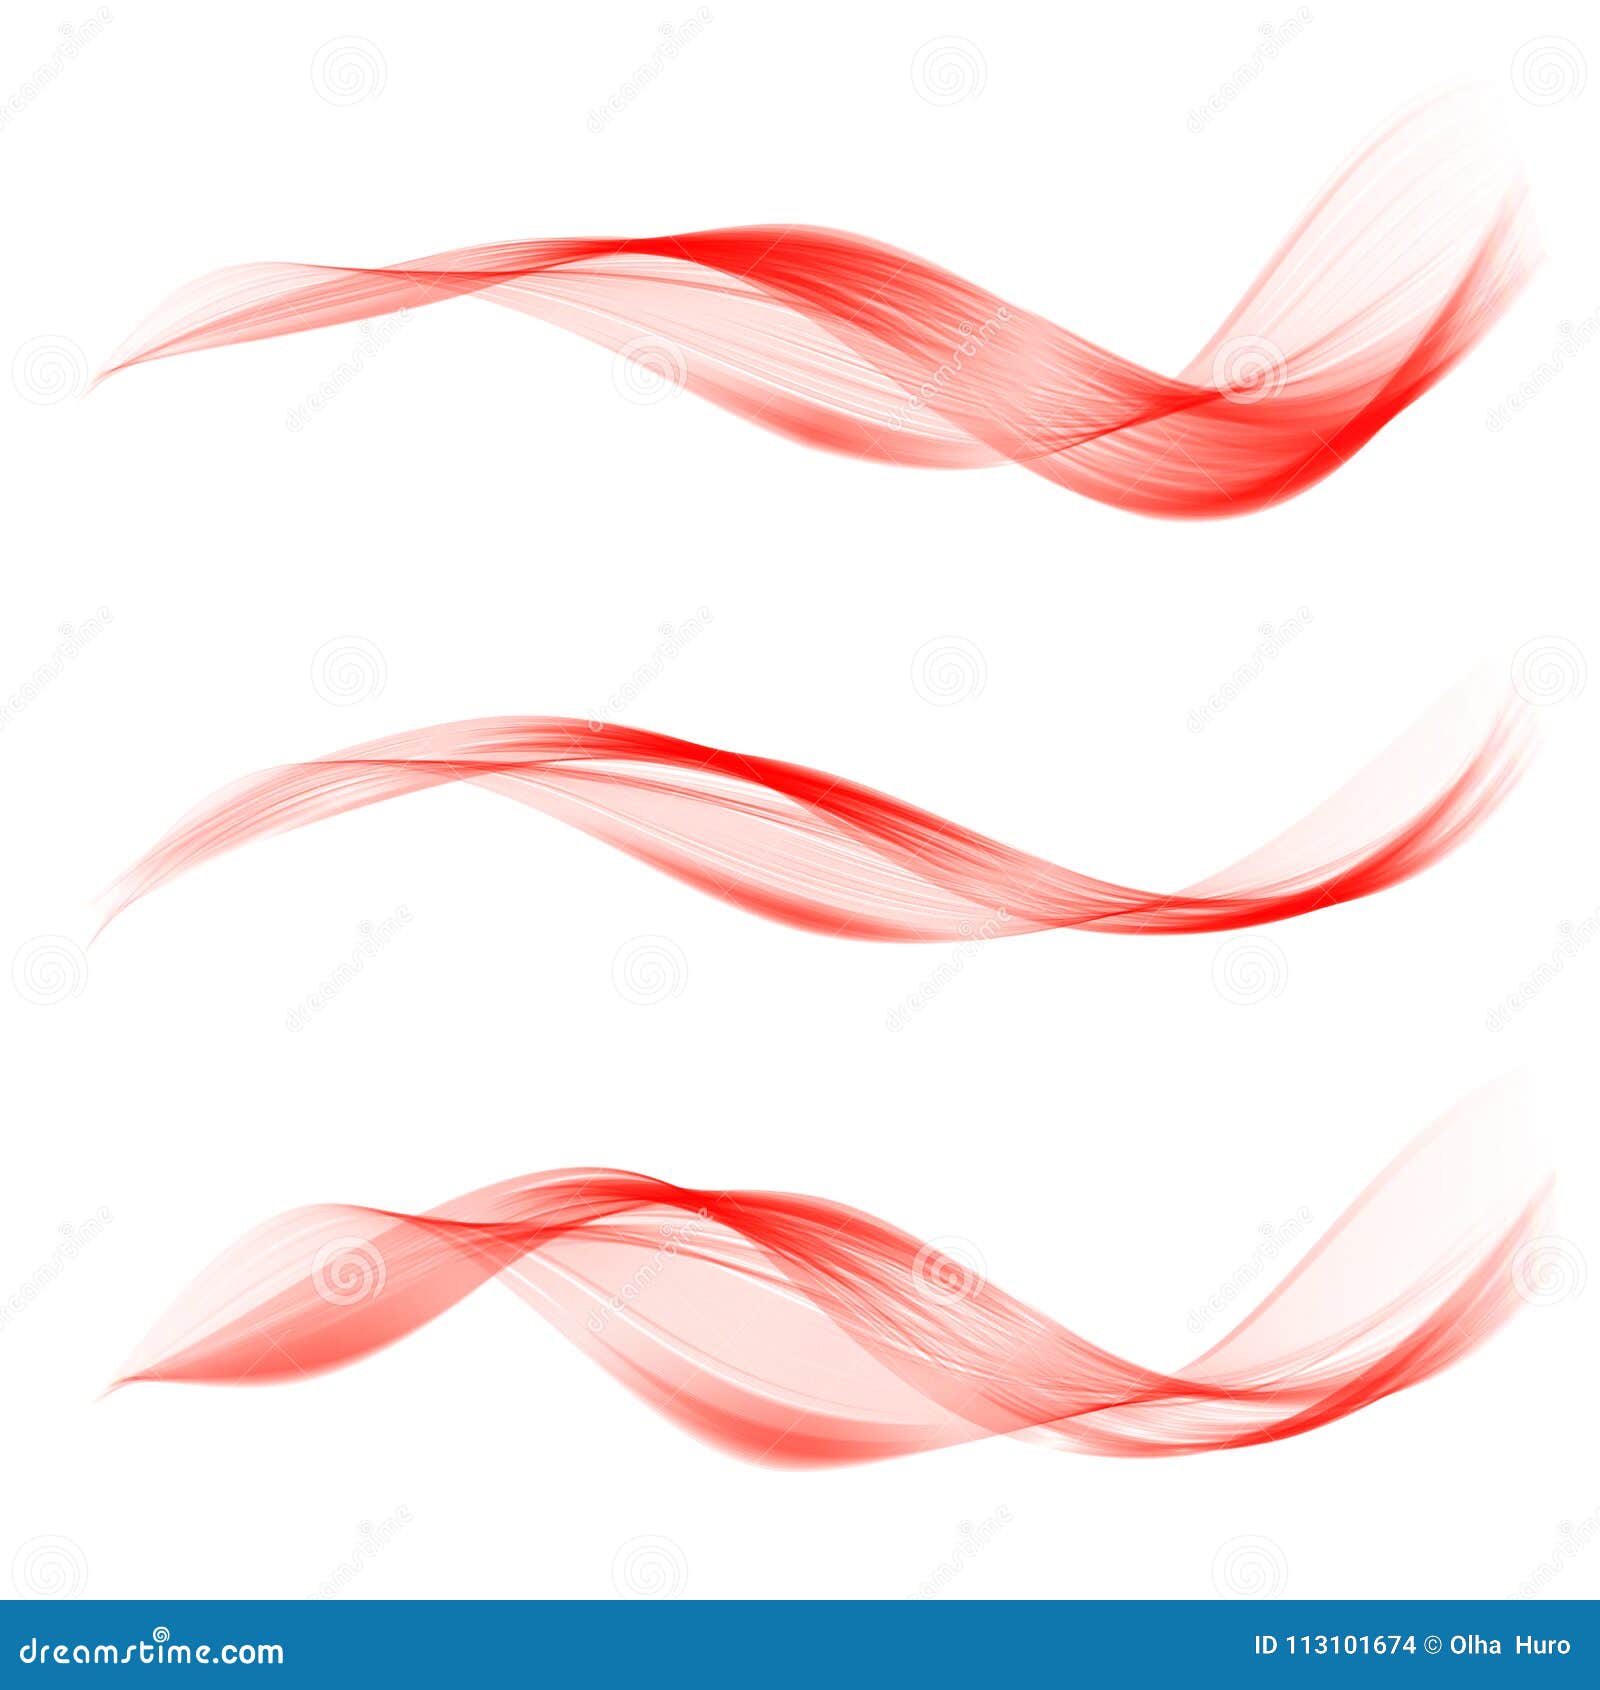 【蝶舞收集】PNG：红绸布 飘带素材之一 - 图片素材 - 华声论坛